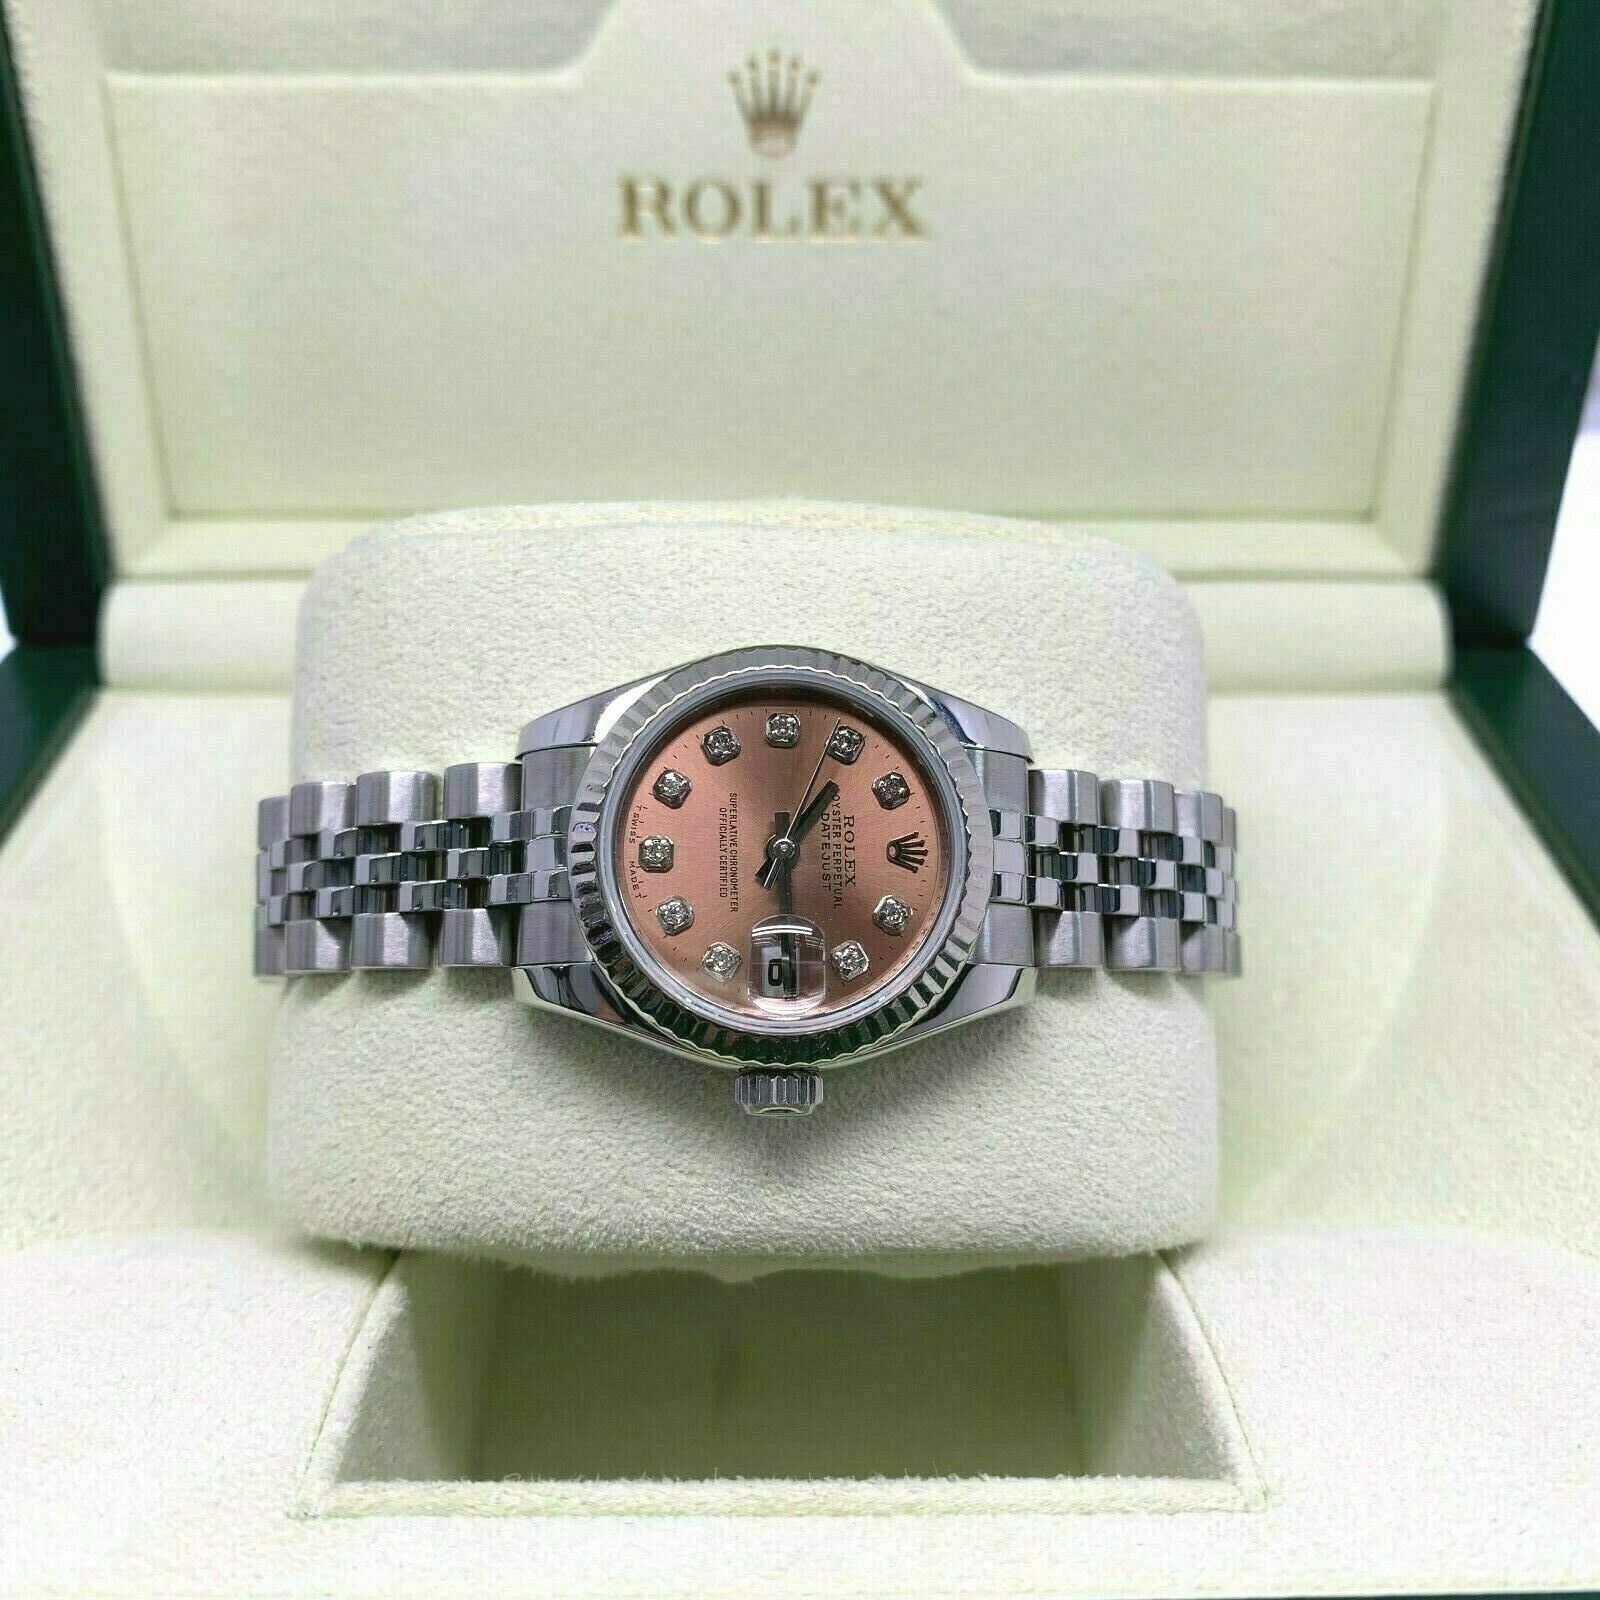 Rolex 26MM Lady Diamond Datejust 18 Karat White Gold Steel Watch Ref # 179174